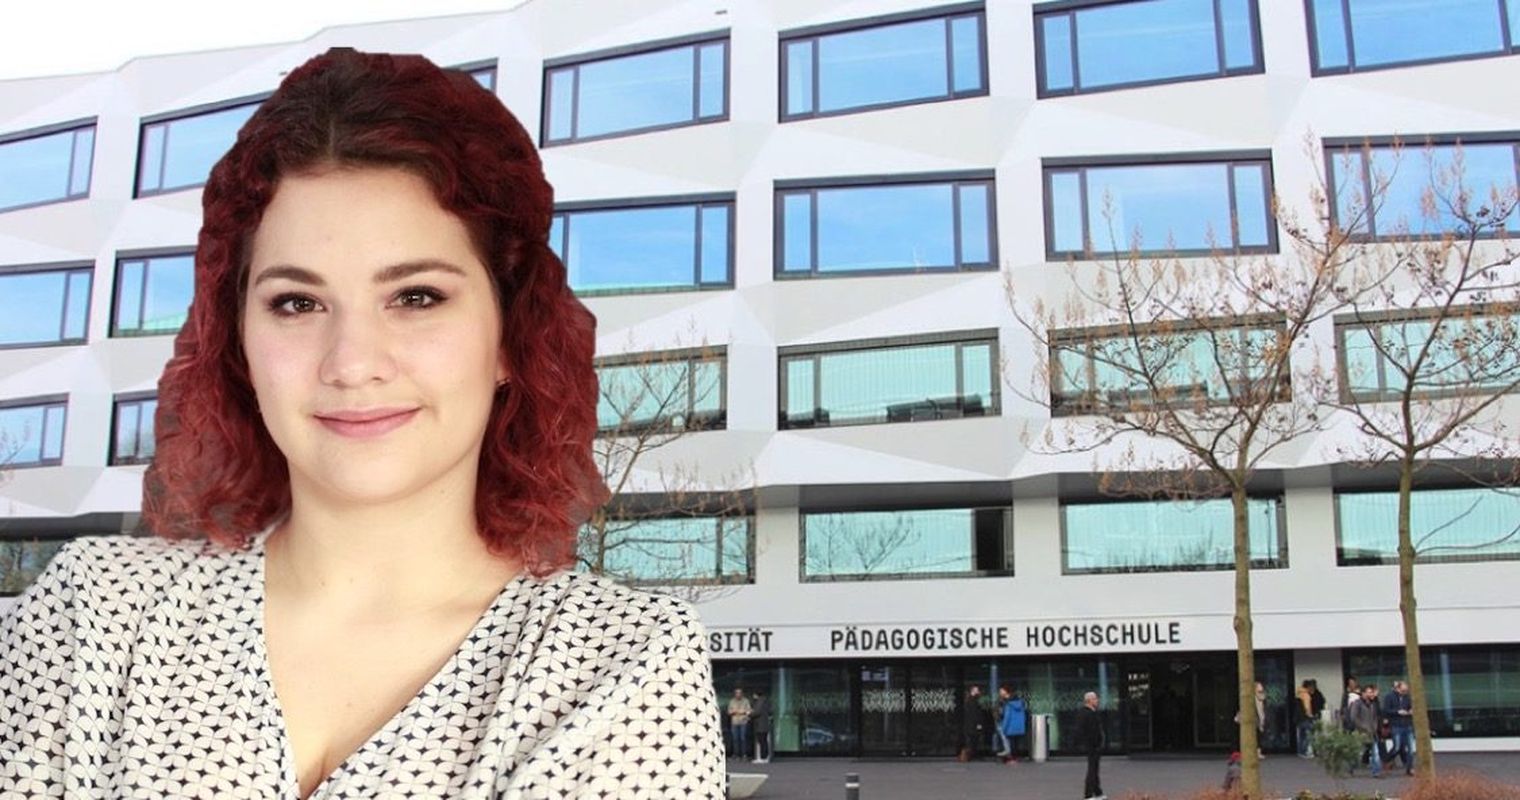 Manko behoben: Jetzt hat Luzern seine erste Studentenzeitung